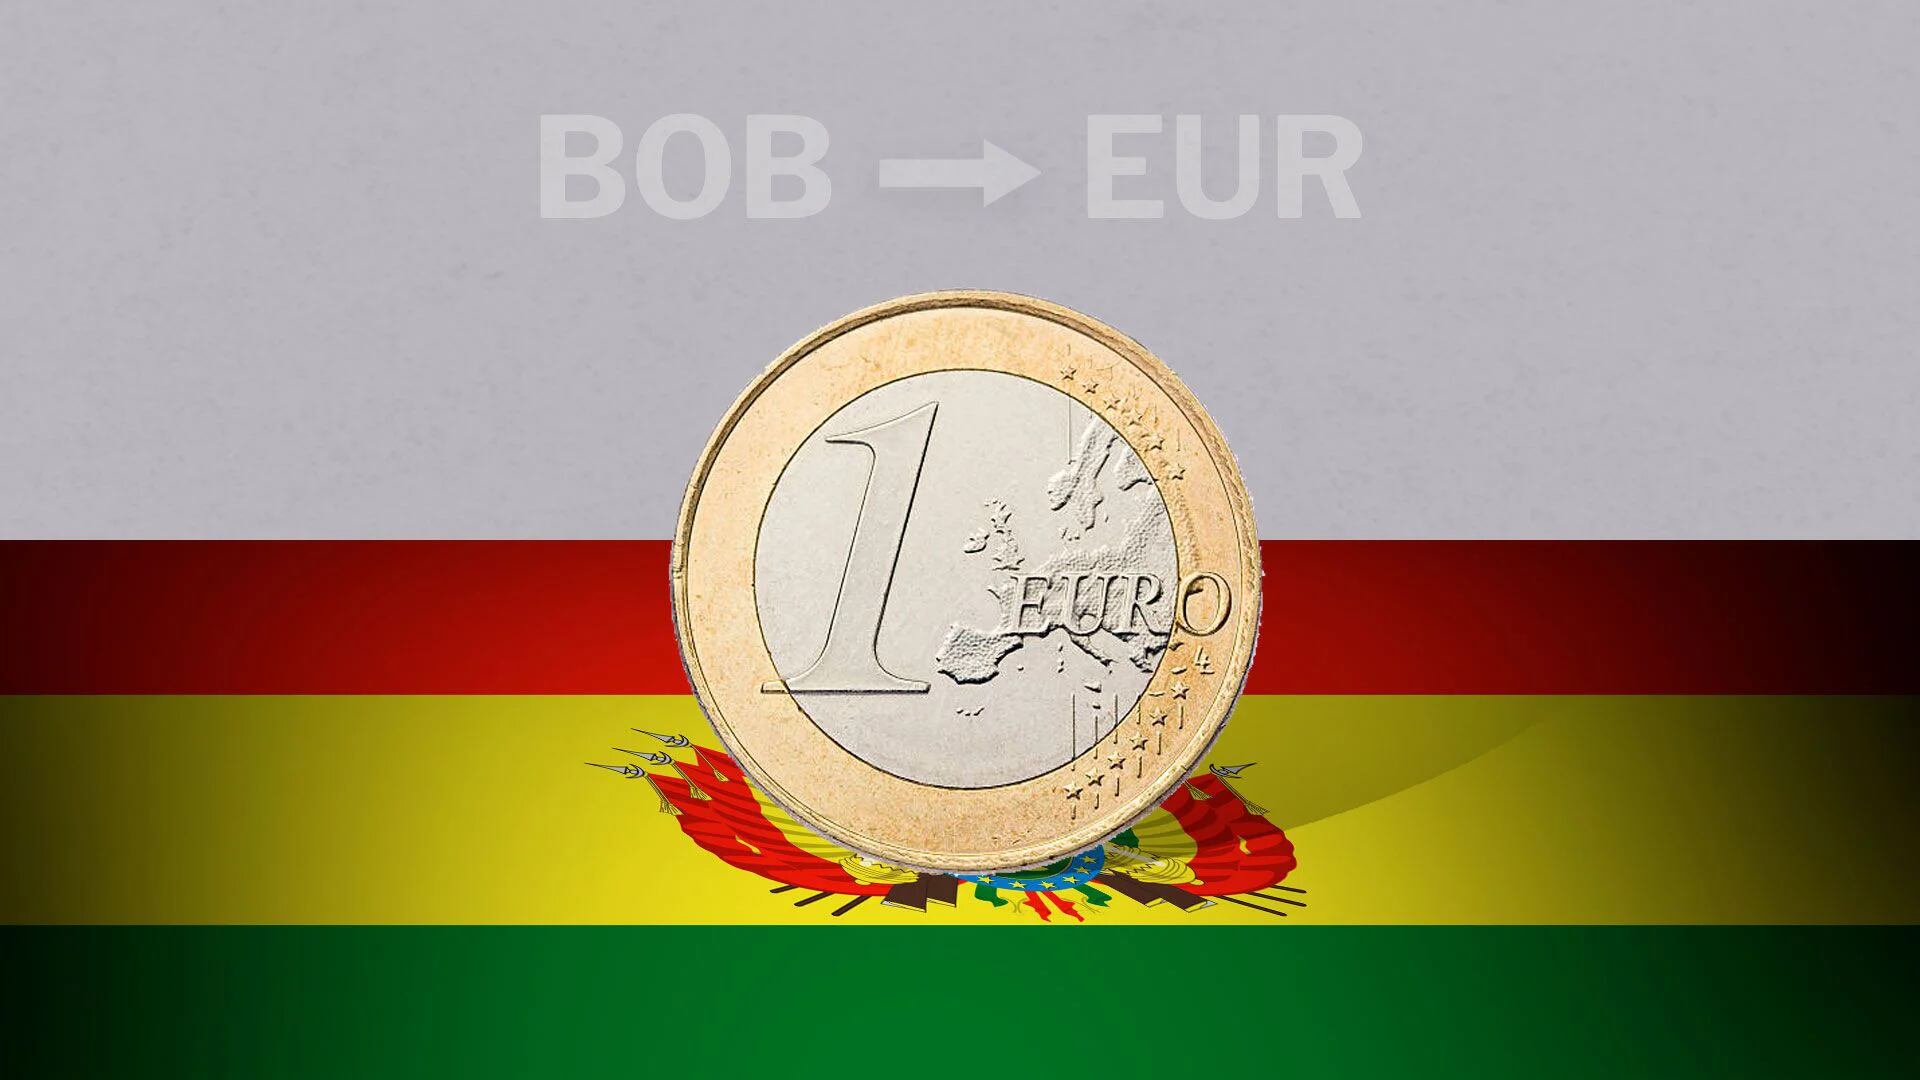 La cotización del euro en el país generalmente se registra estable. (Infobae)